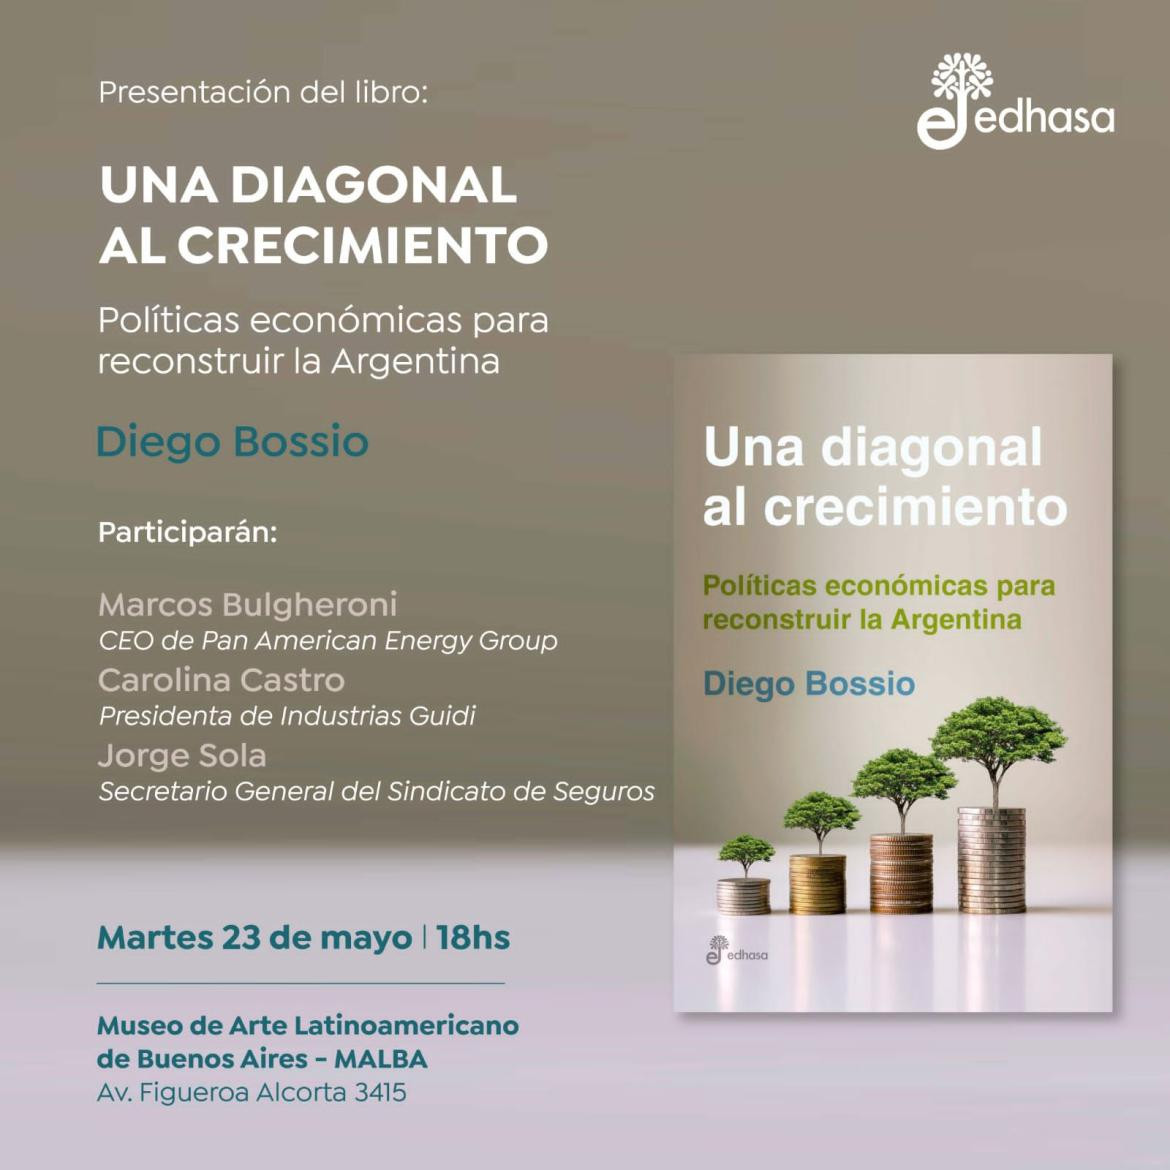 Presentación del libro Una diagonal al crecimiento de Diego Bossio.